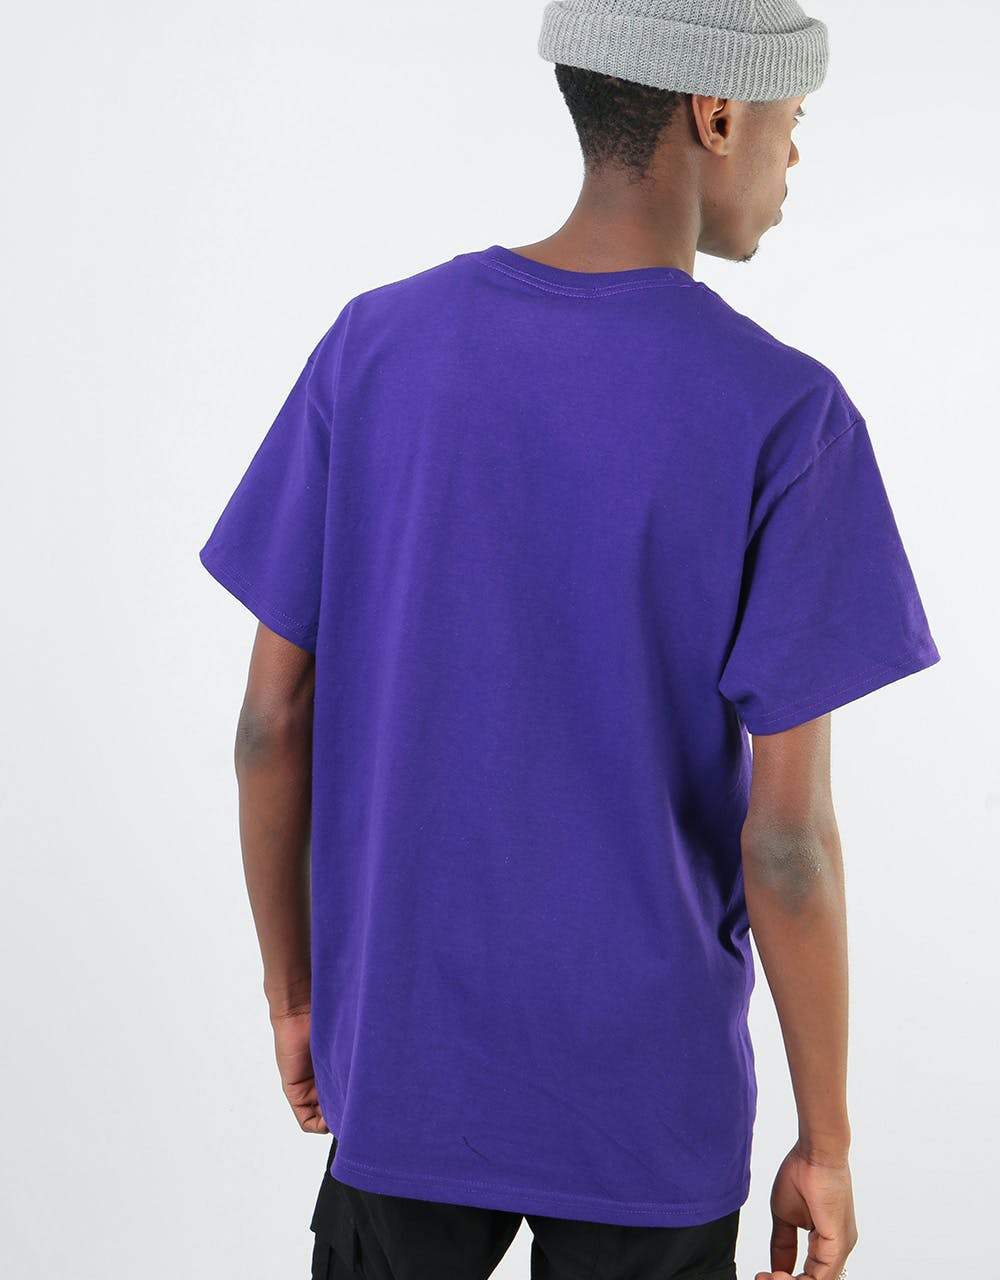 Route One Originals T-Shirt - Purple